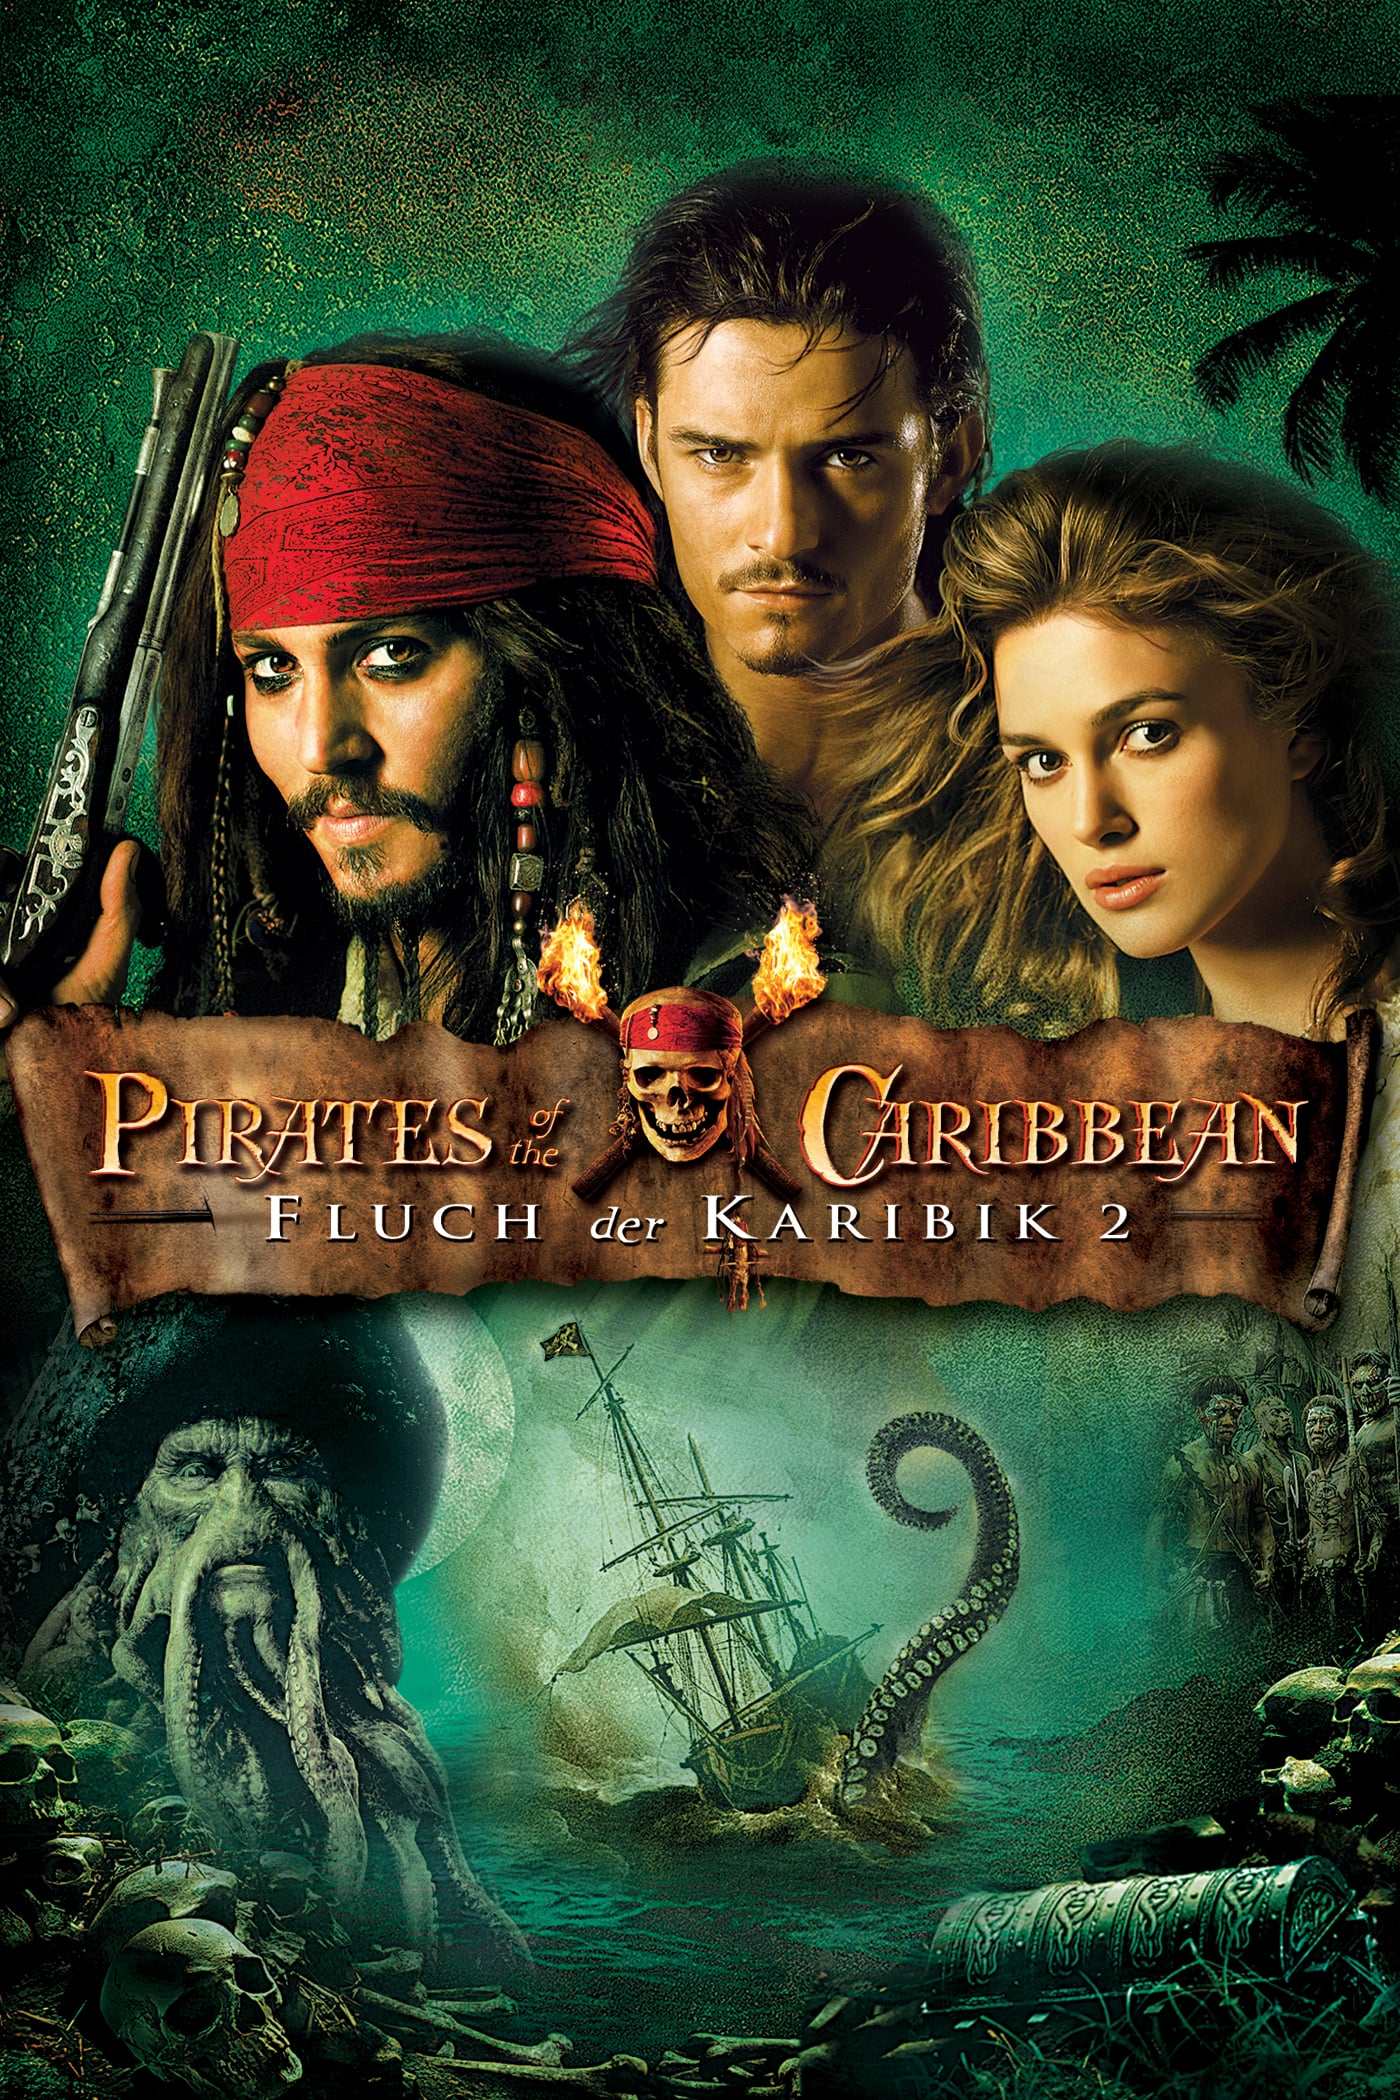 Piratas del Caribe - El cofre de la muerte